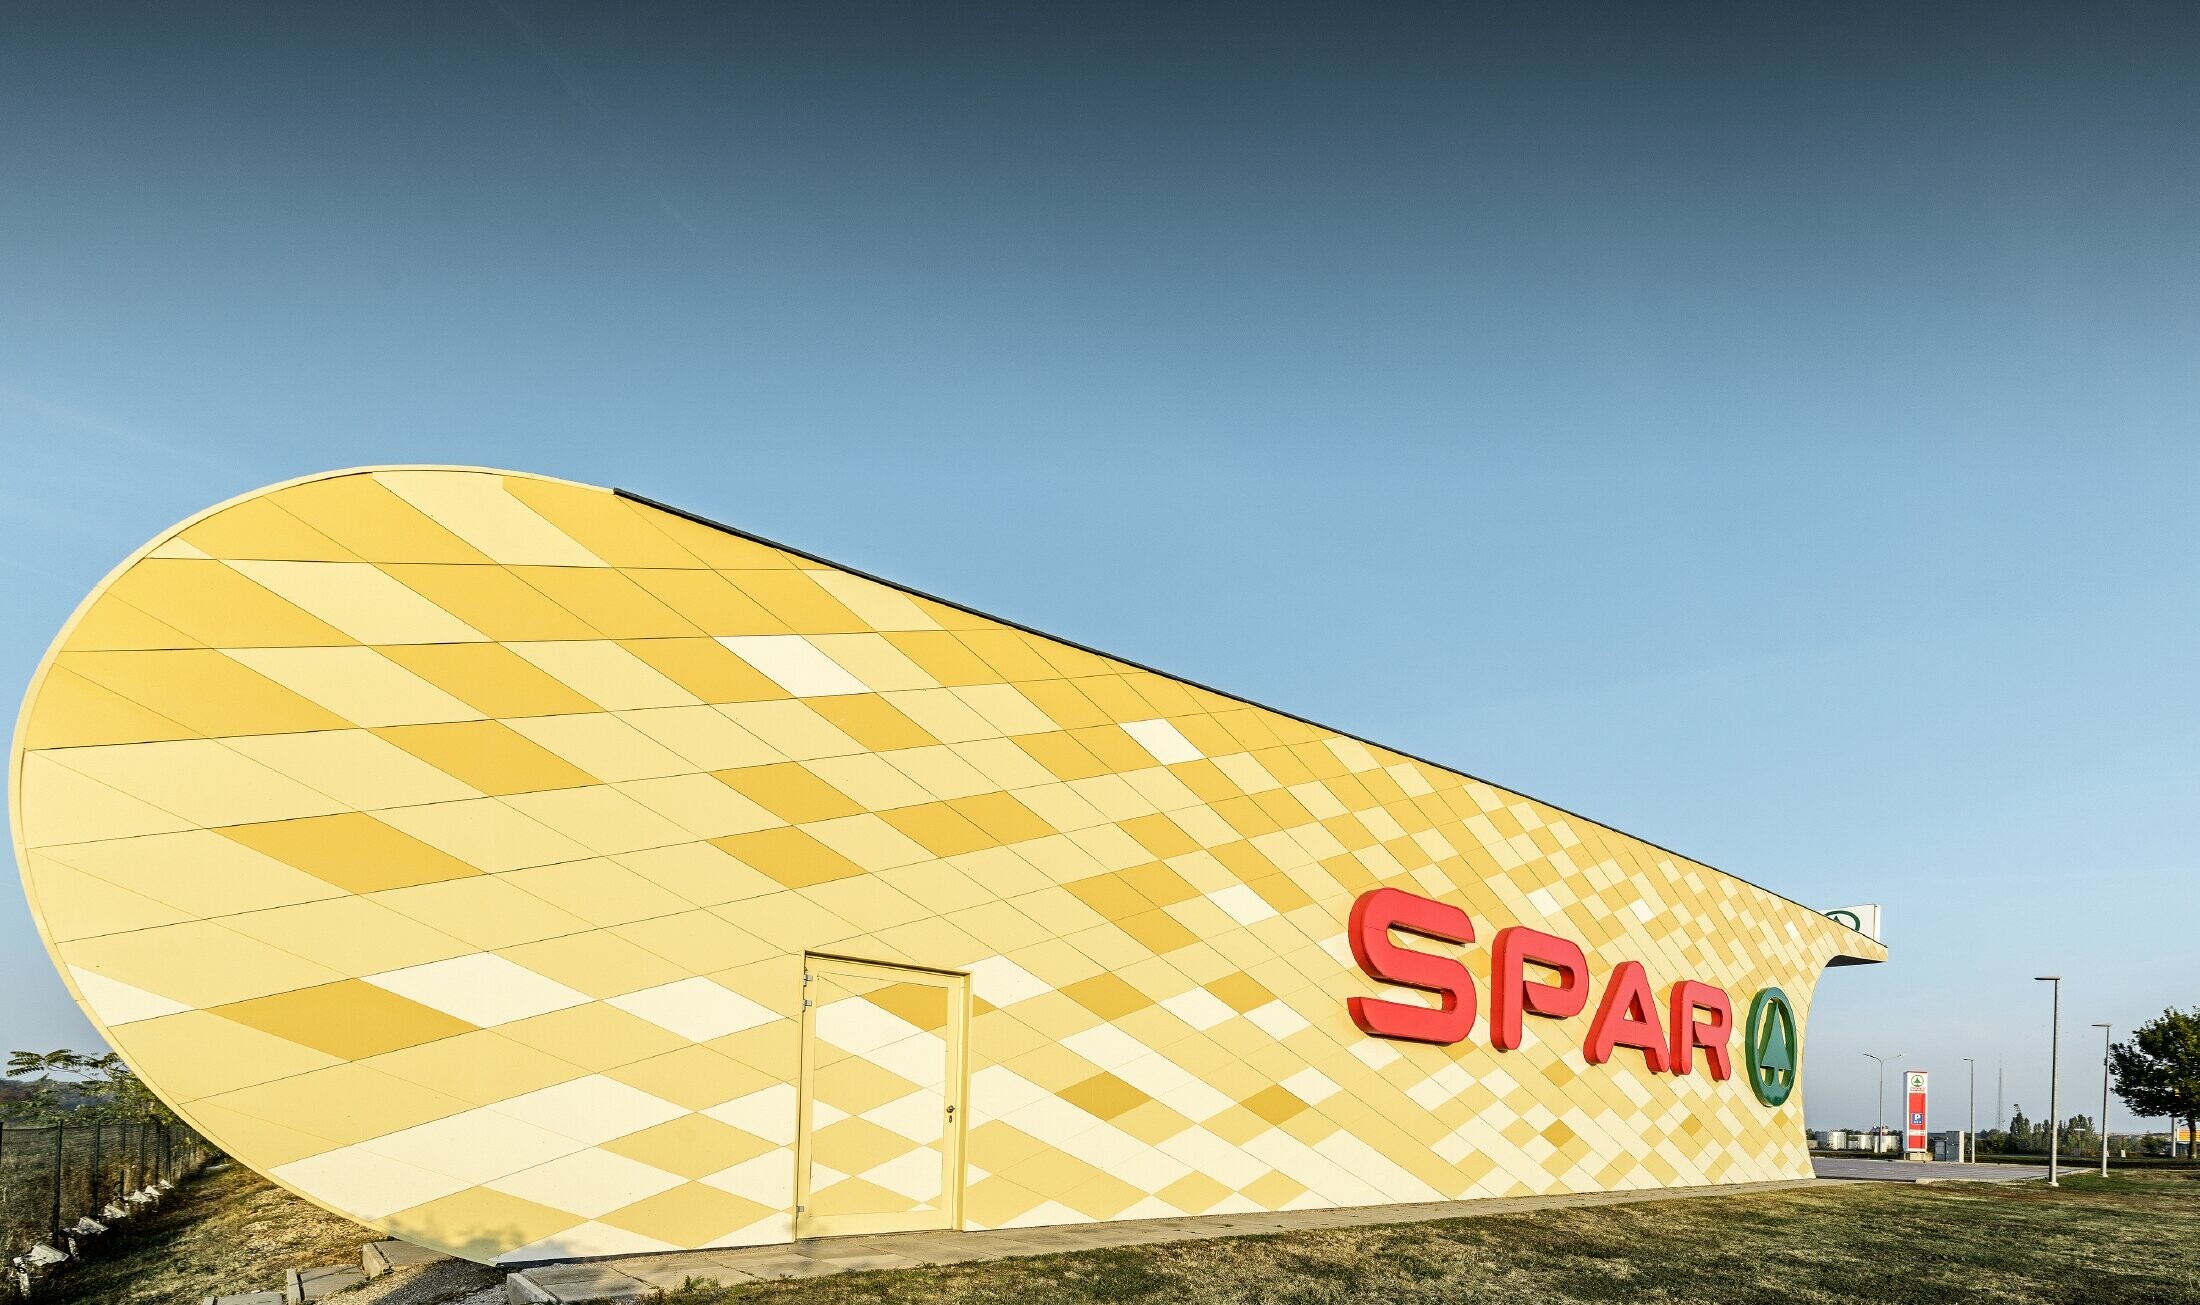 Filia banku Spar z elewacją aluminiową z pomarańczowo-żółtych rombów i z logo Spar